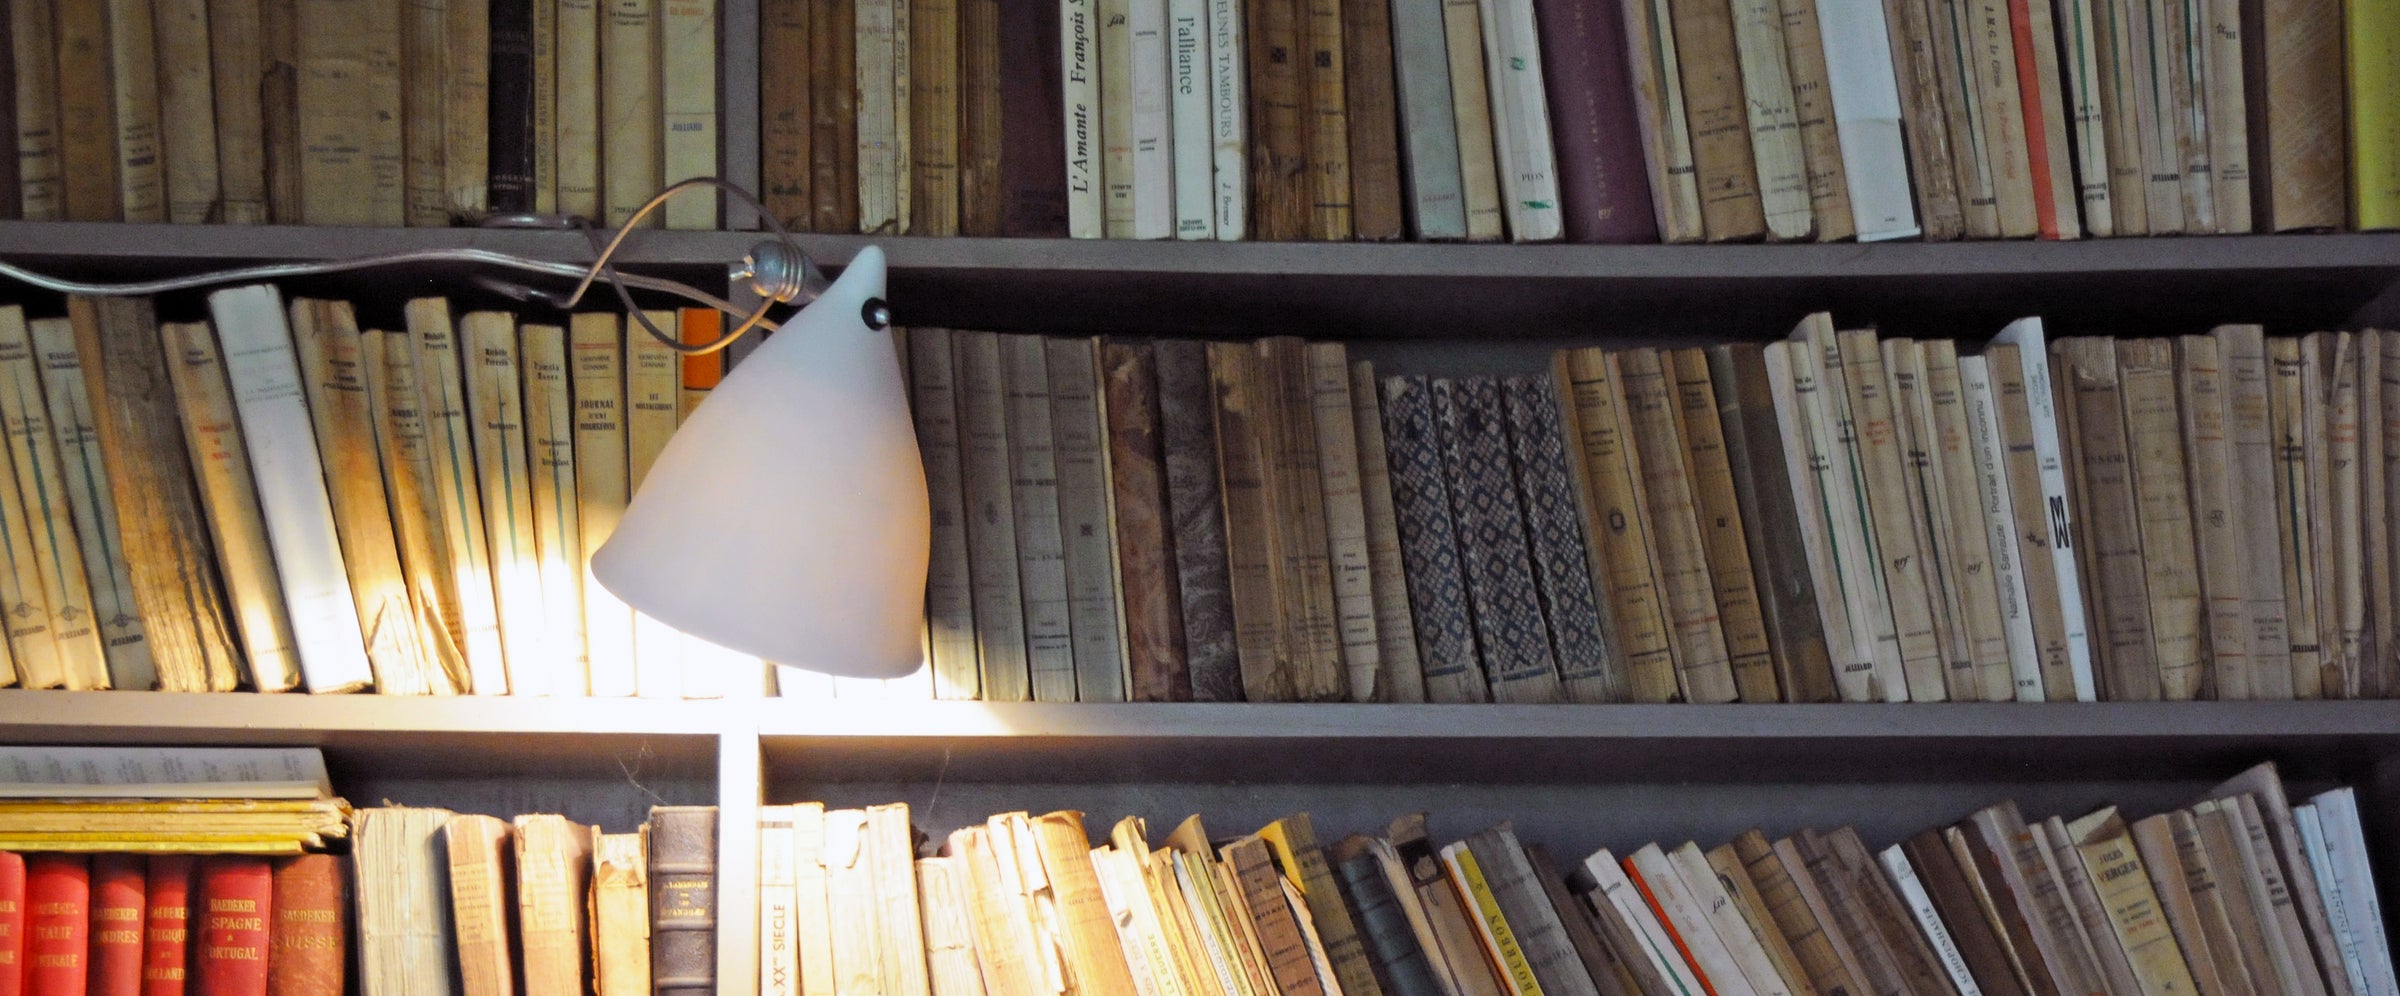 Lampe en porcelaine pincée sur une bibliothèque